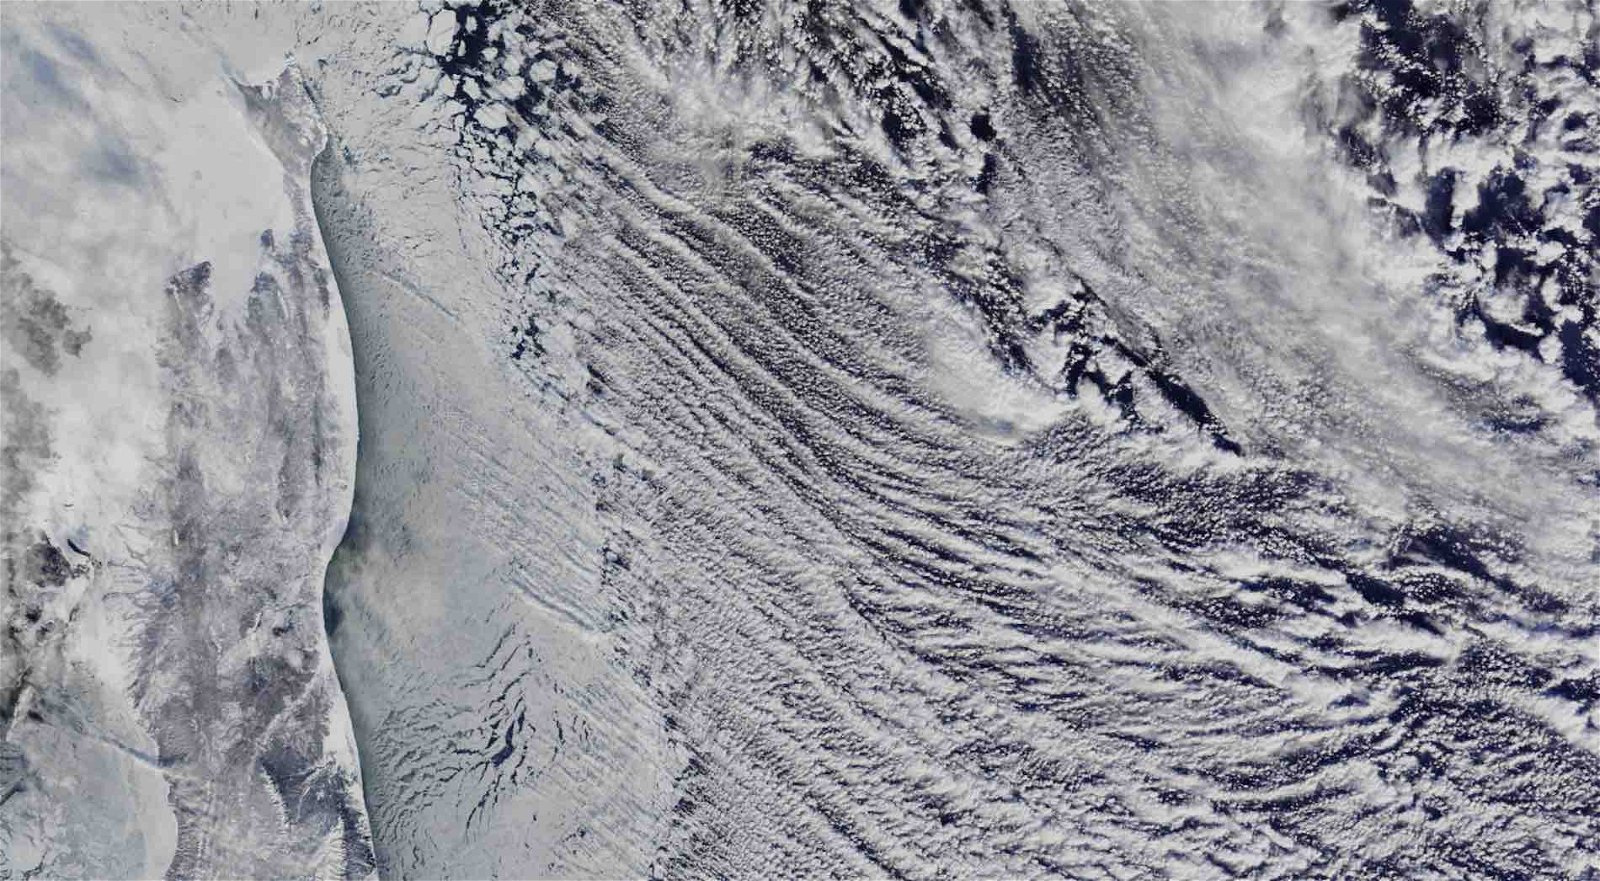 Le immagini satellitari della NASA hanno rivelato qualcosa di strano nel cielo sopra la costa orientale della Russia